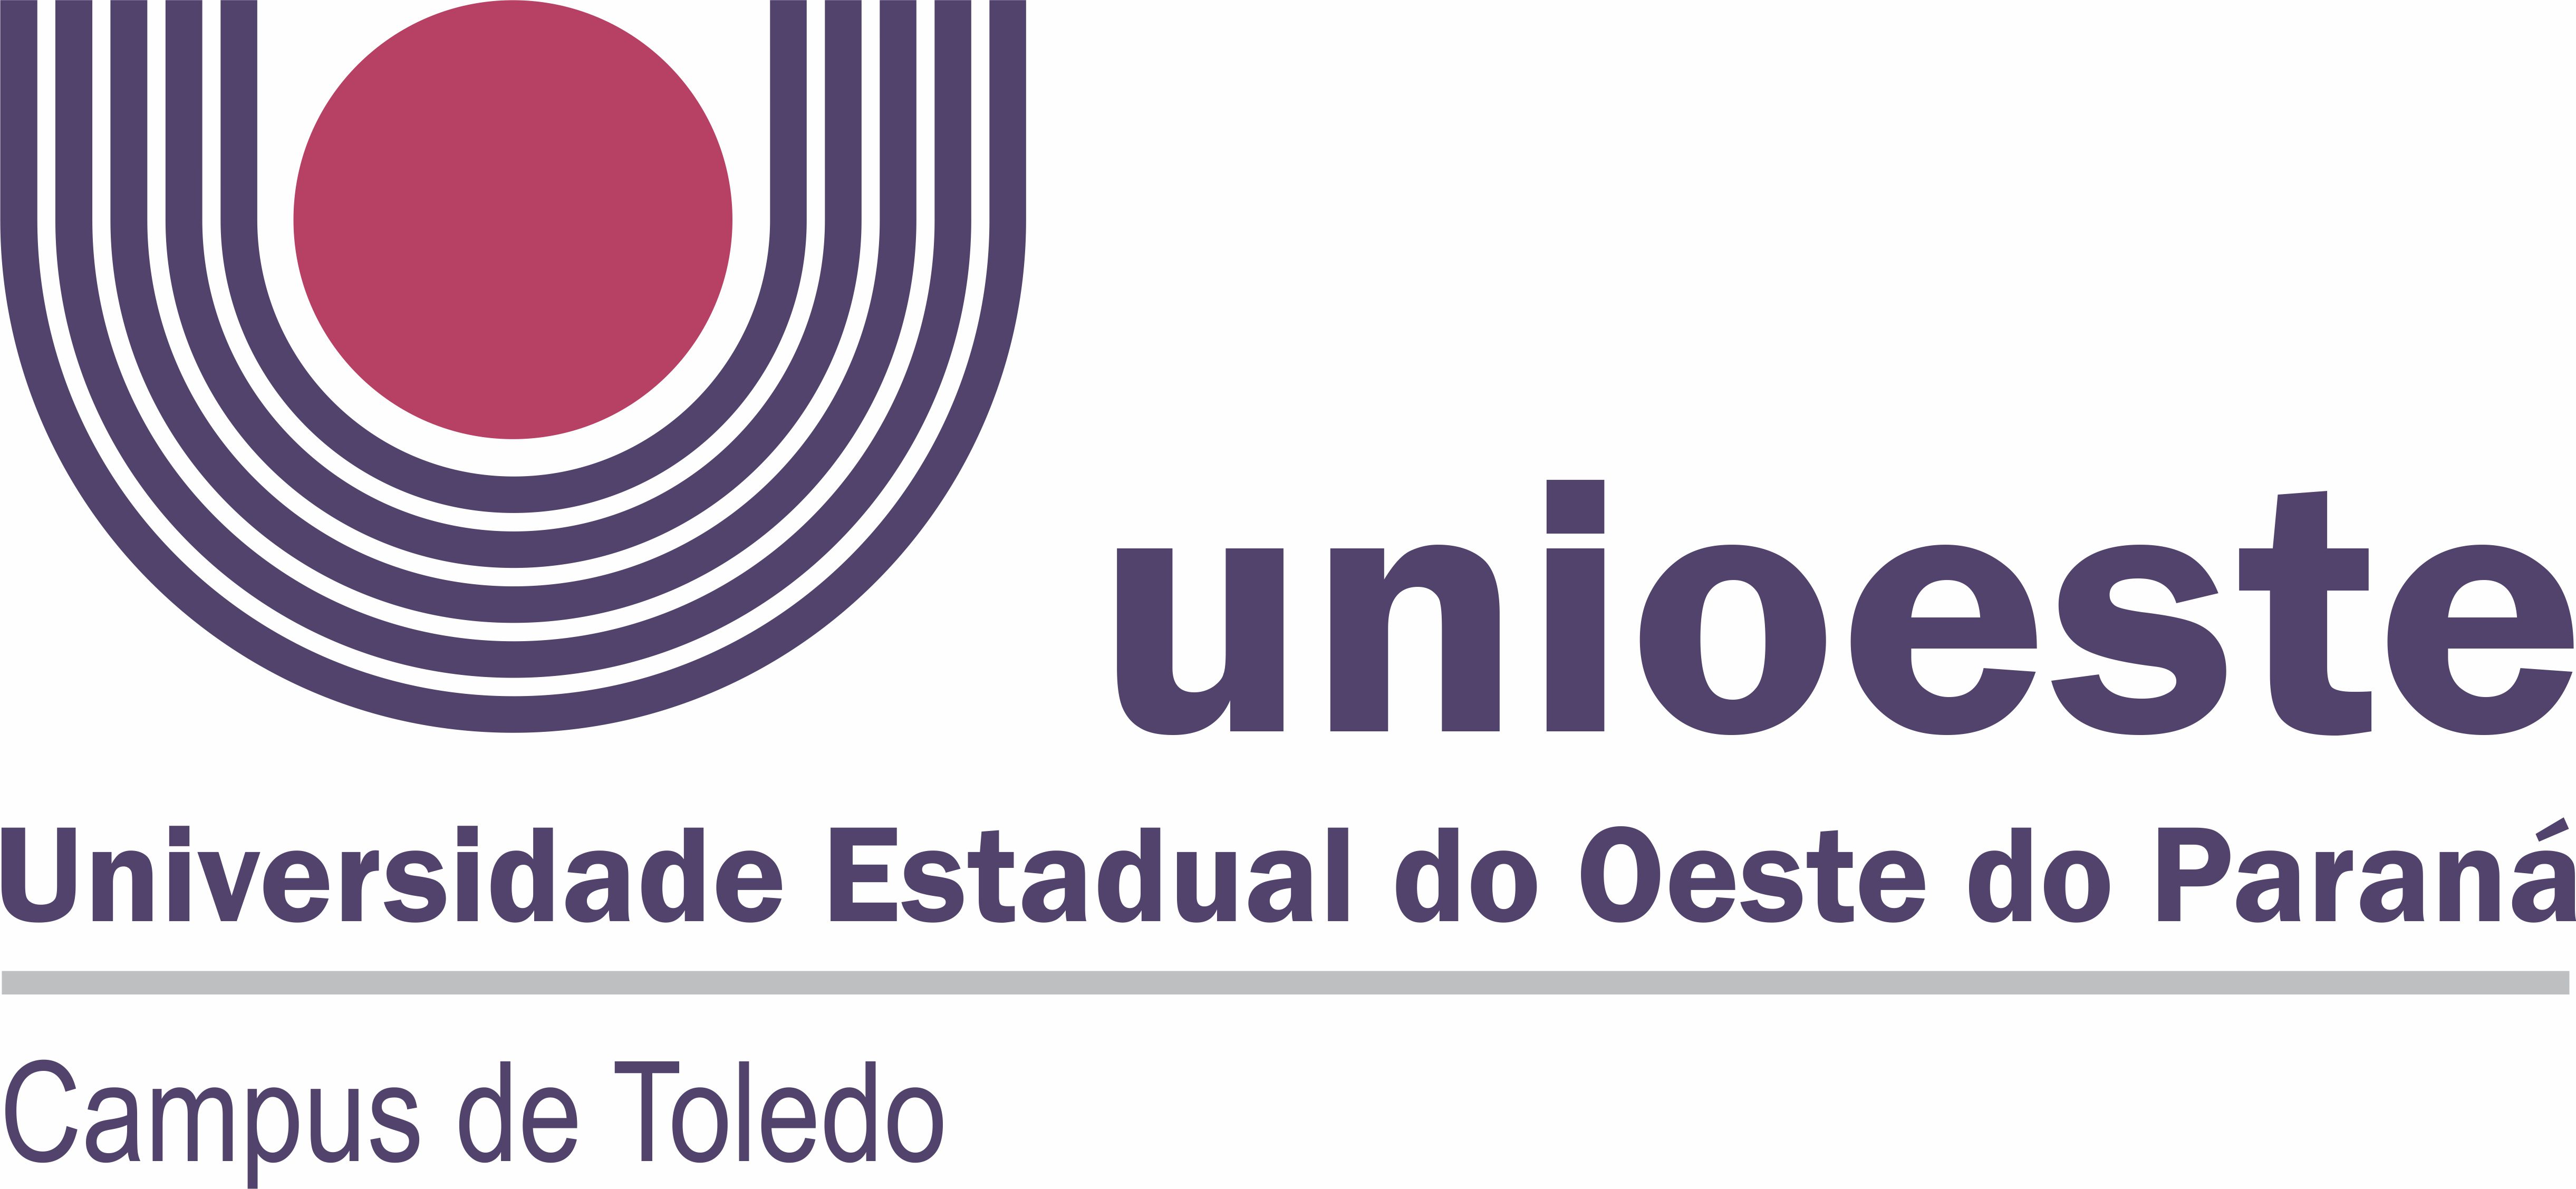 Logotipo Unioeste CAMPUS TOLEDO copy copy